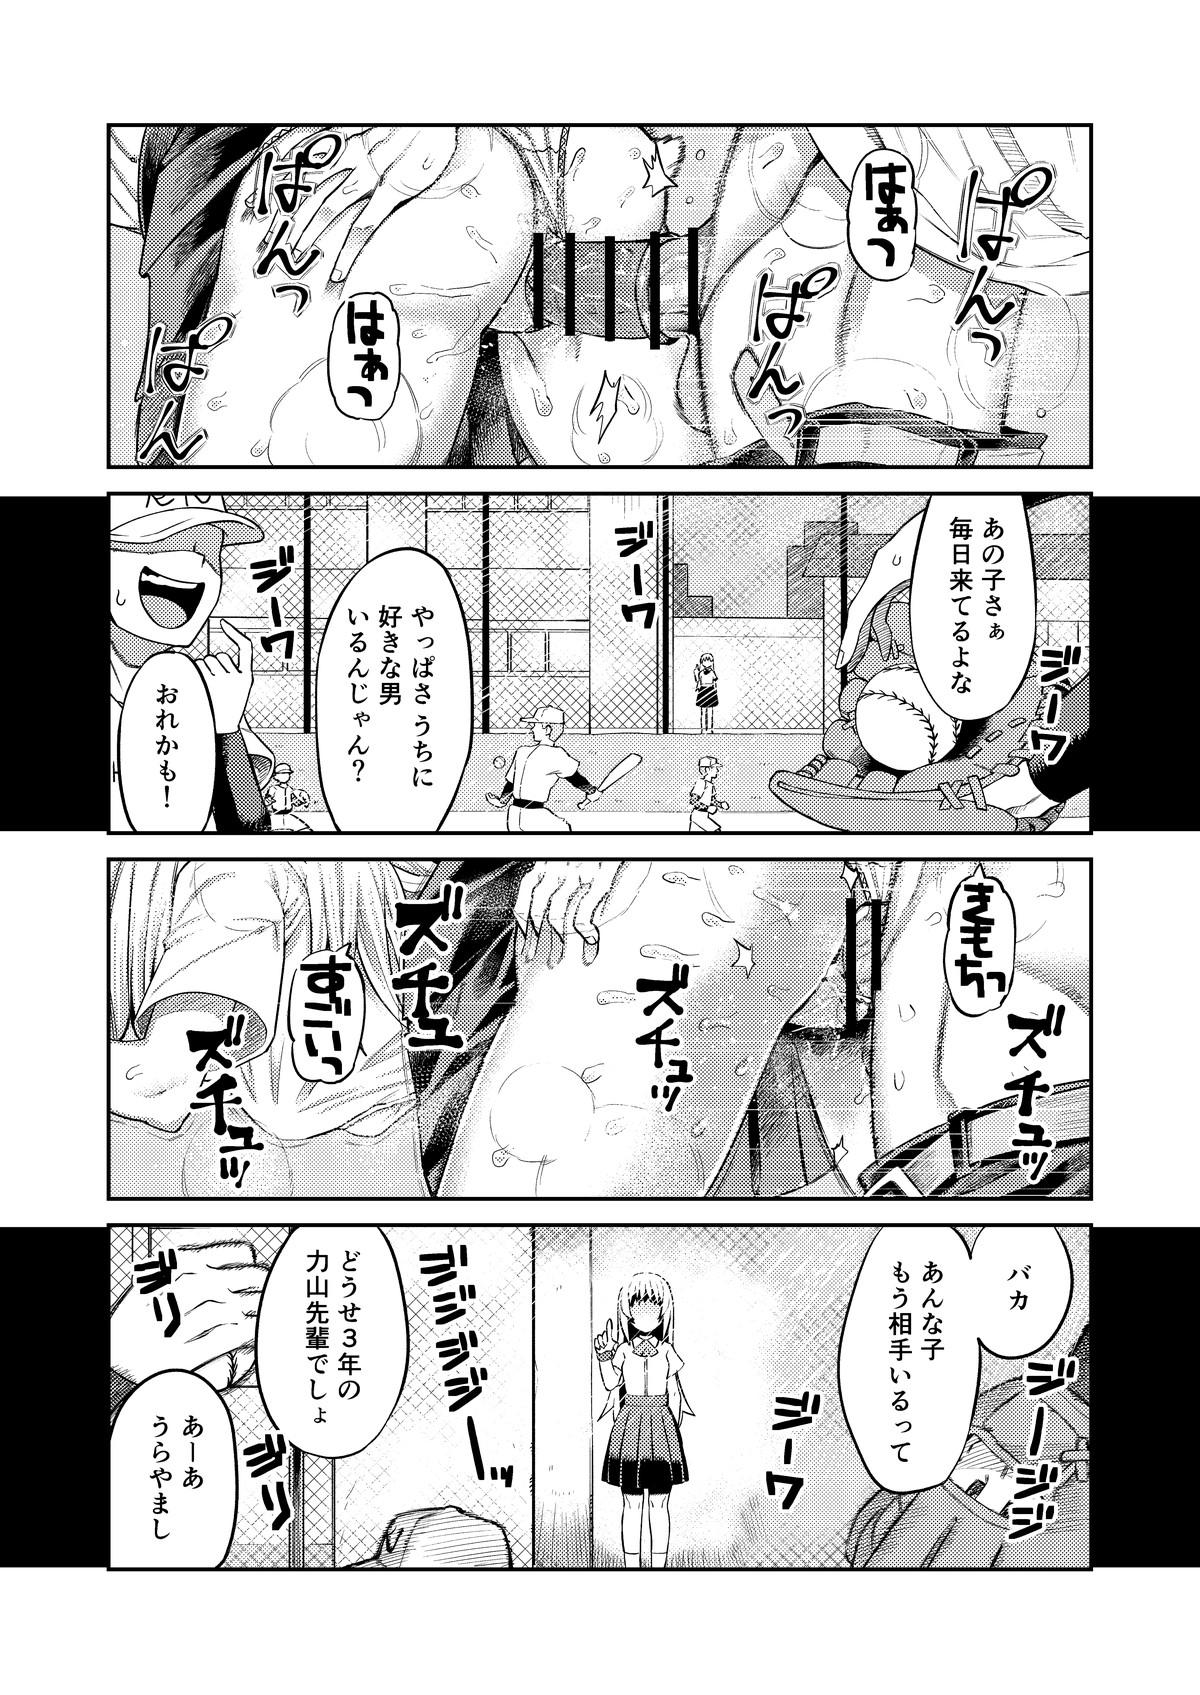 Hot Blow Jobs Riyū wa fumeidaga etchi shite kureru kōhai - Original Str8 - Page 2